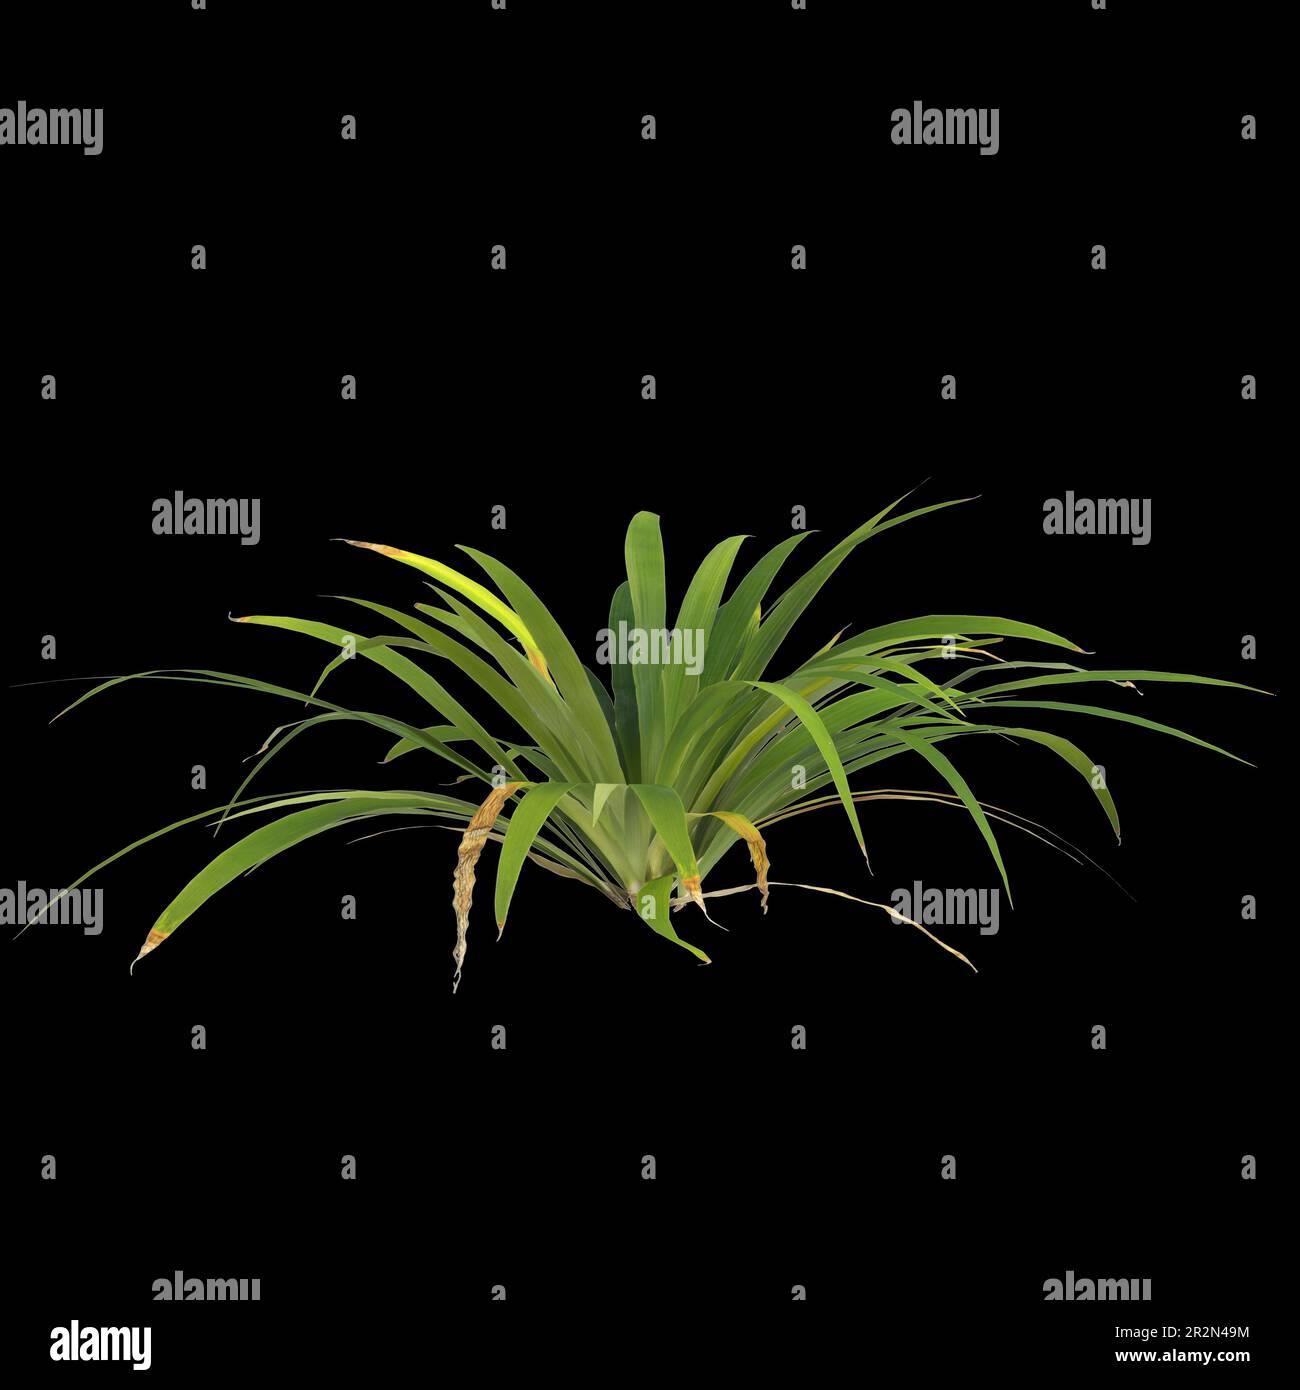 3d illustration of setaria palmifolia plant isolated on black background Stock Photo